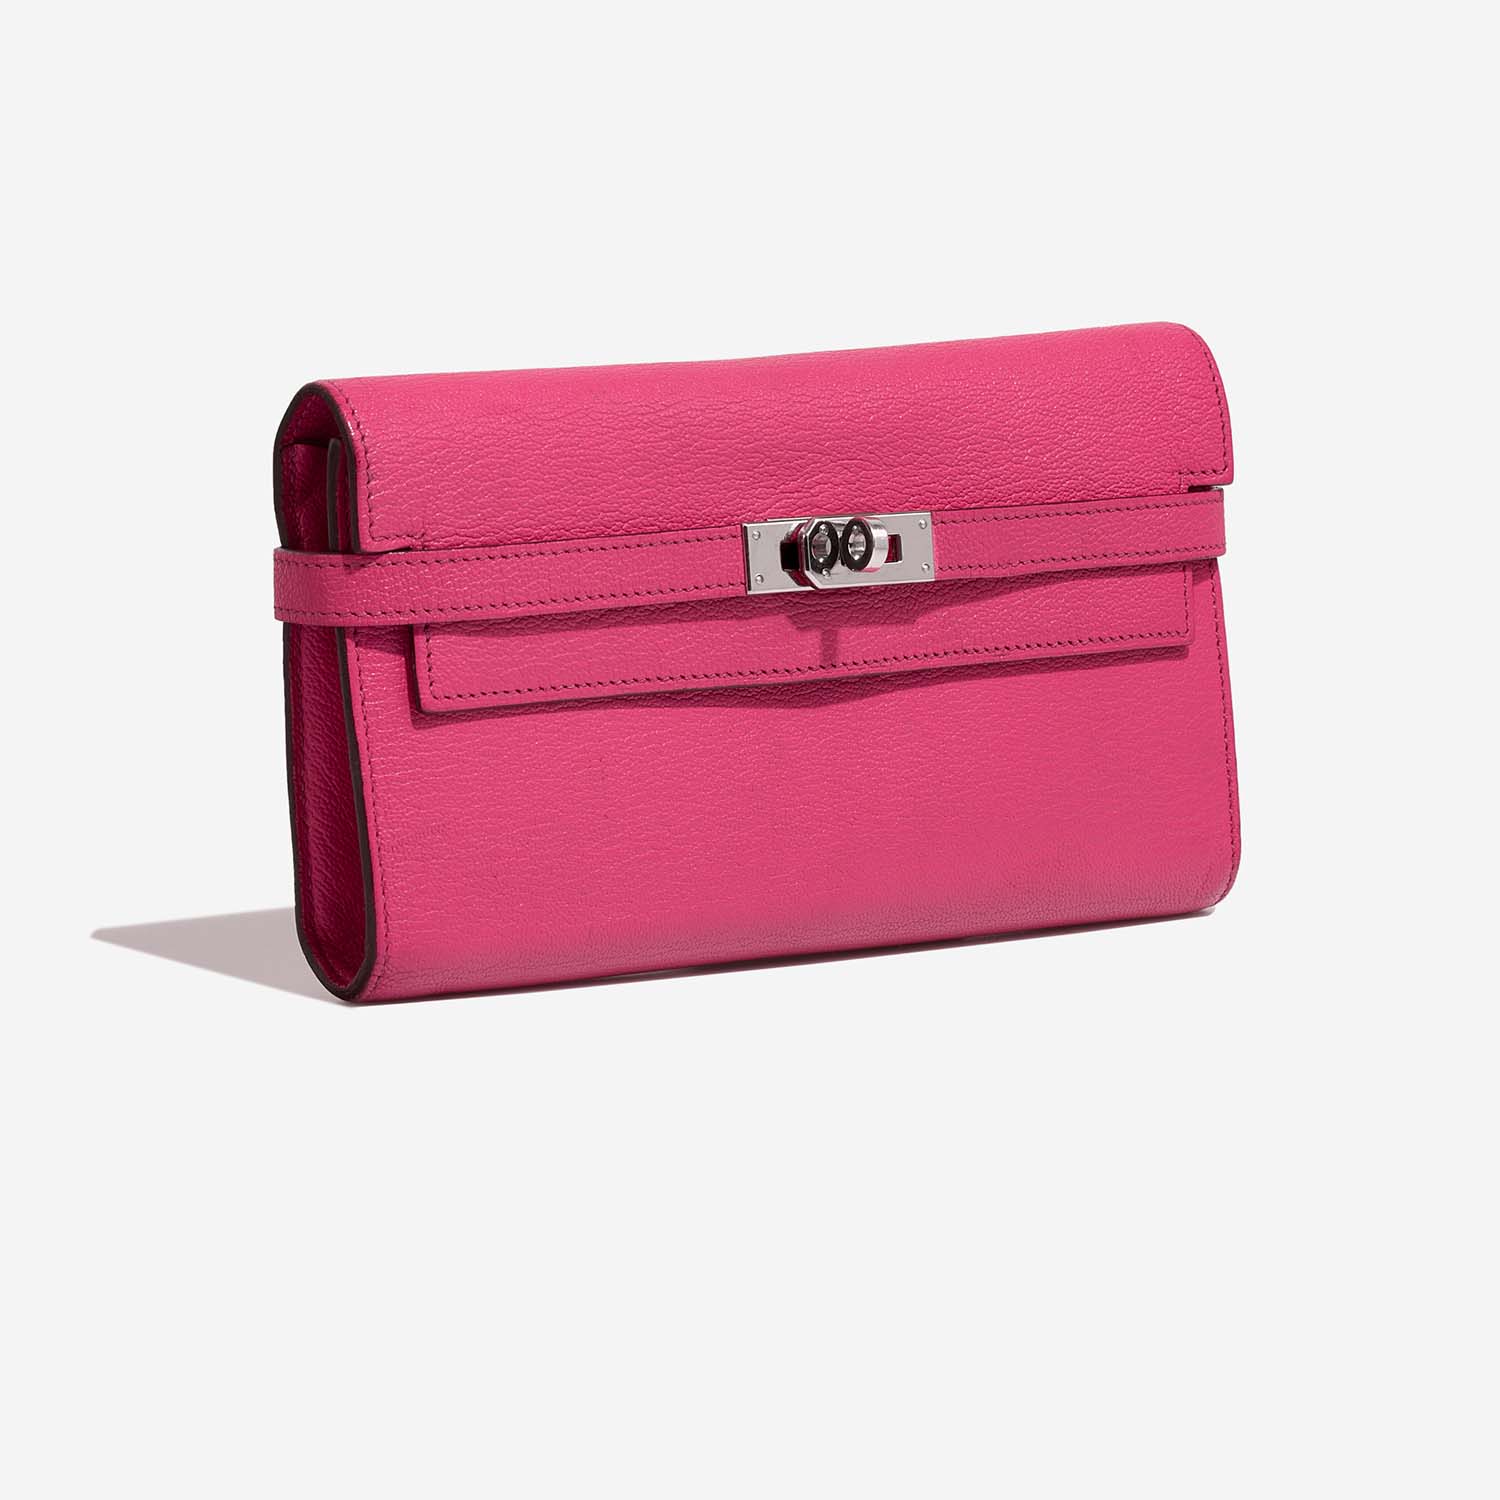 Sac Hermès d'occasion Kelly Long Wallet Chèvre Mysore Rose Tyrien Pink | Vendez votre sac de créateur sur Saclab.com